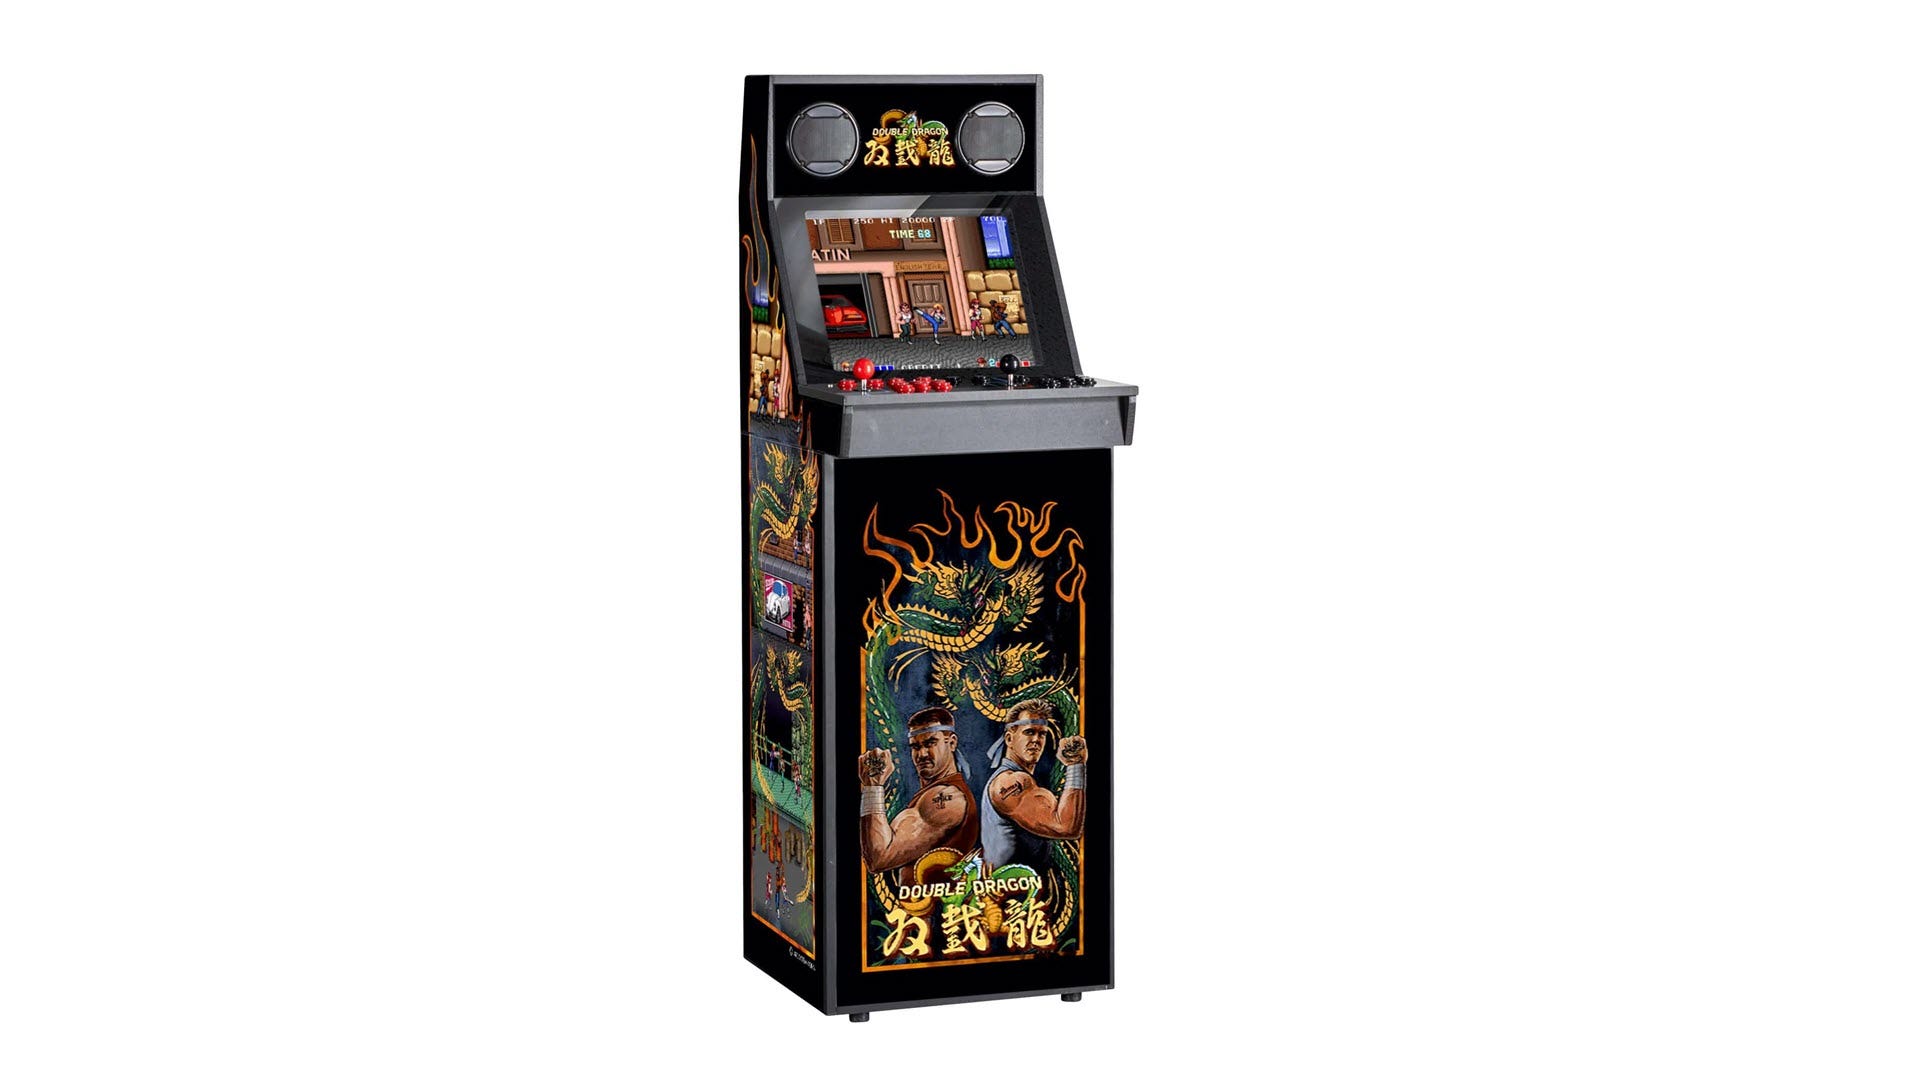 En videospelsmaskin med tema 'Double Dragon'.